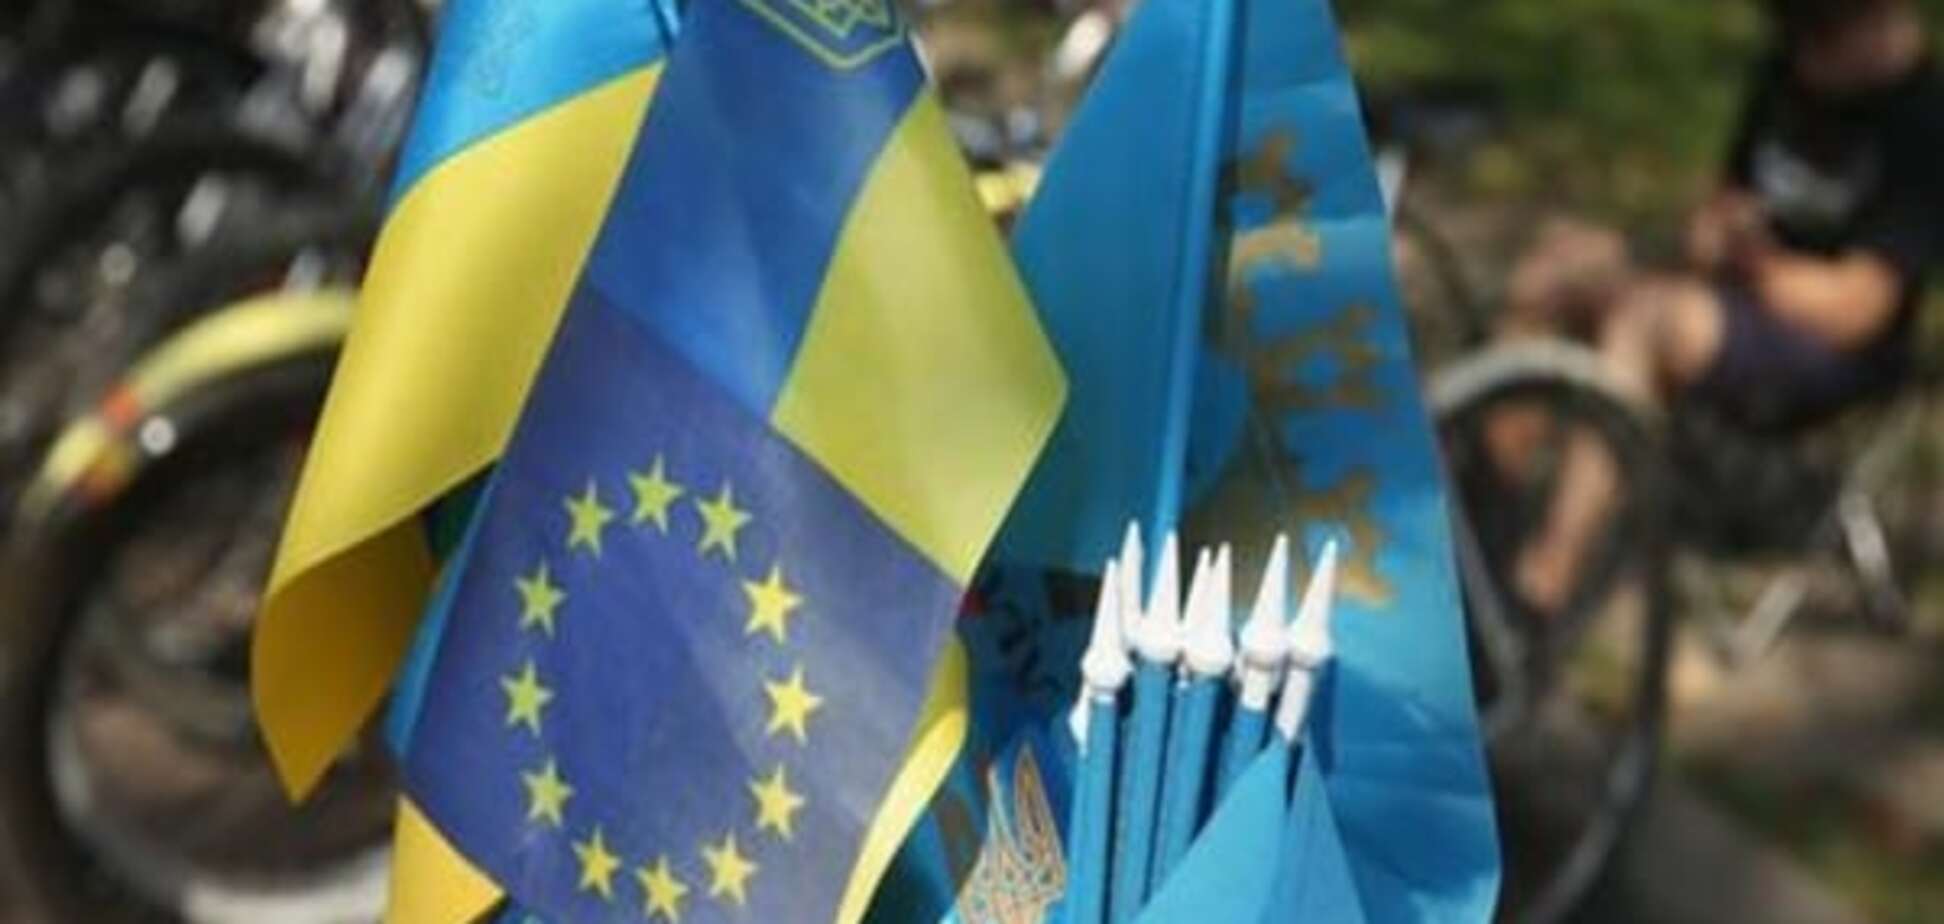 Угода про асоціацію України з ЄС: неприємні сюрпризи процесу ратифікації